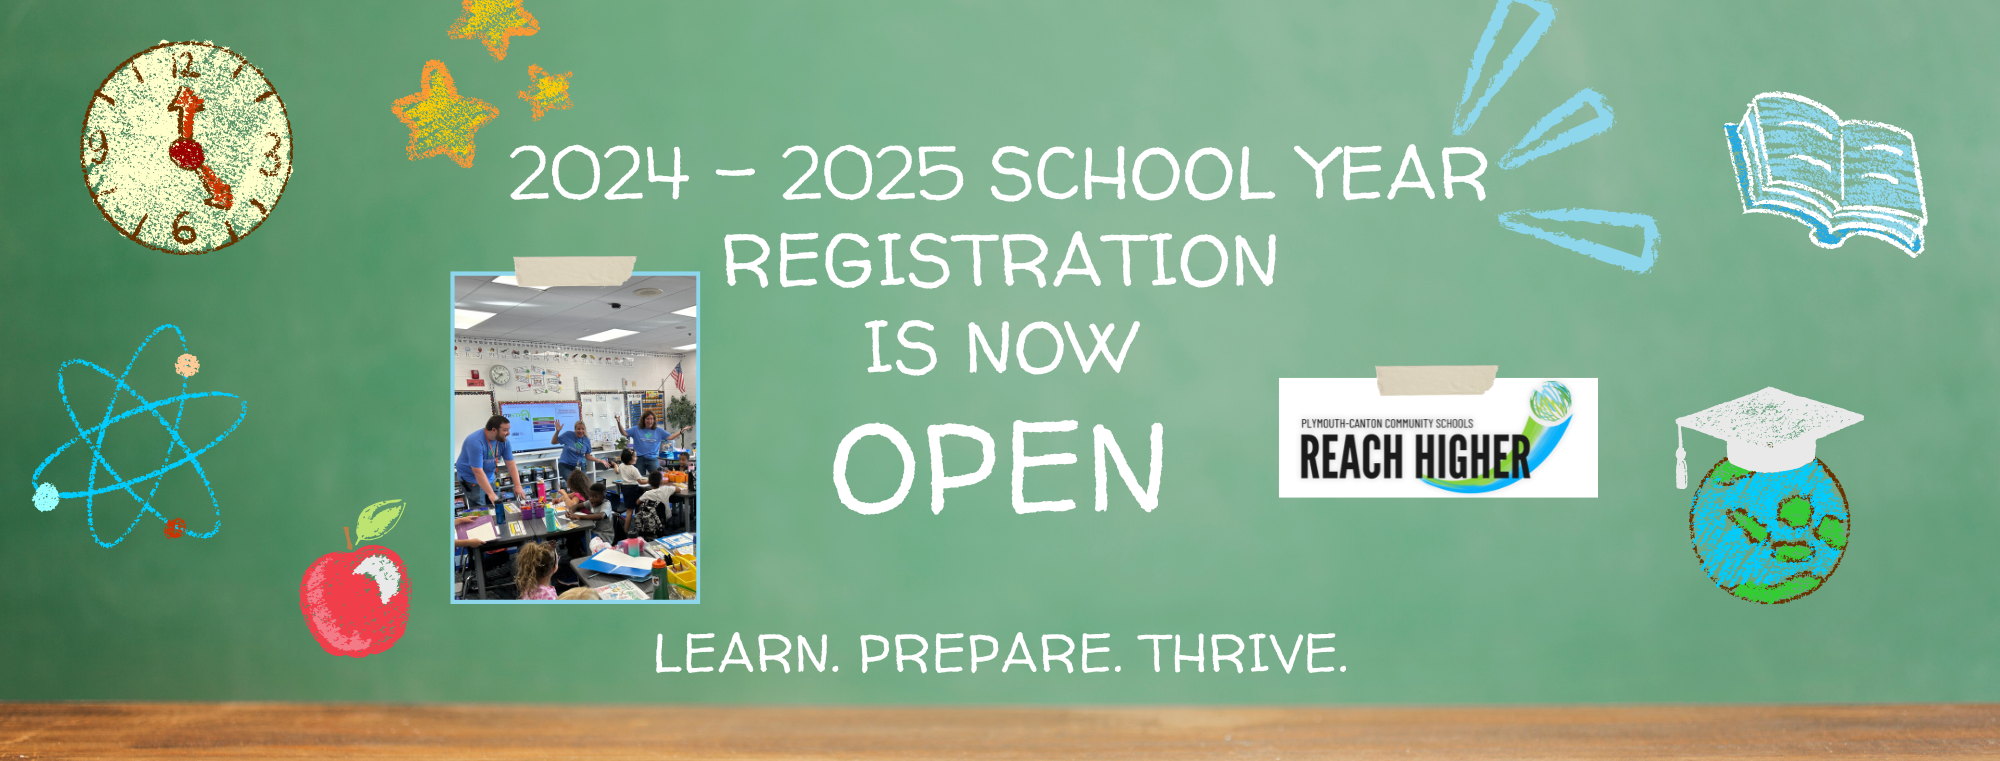 2024 - 2025 school year registration is now open